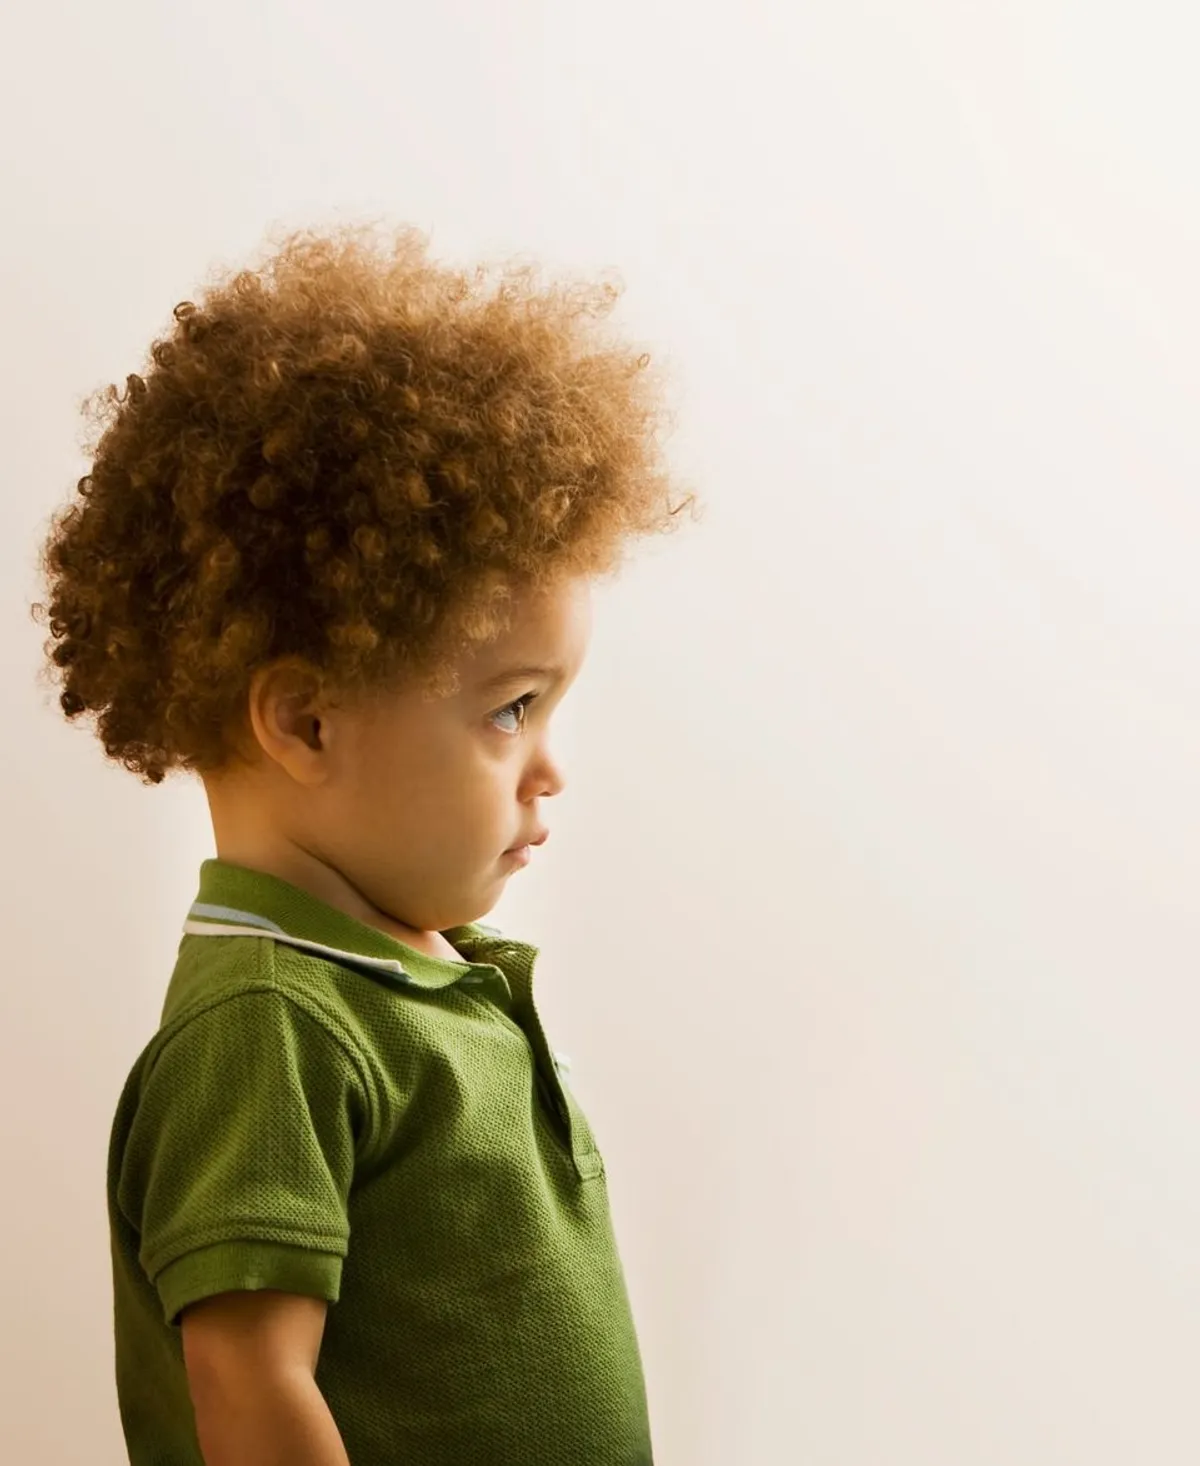 Ein kleiner Junge schaut zur Seite. | Source: Shutterstock